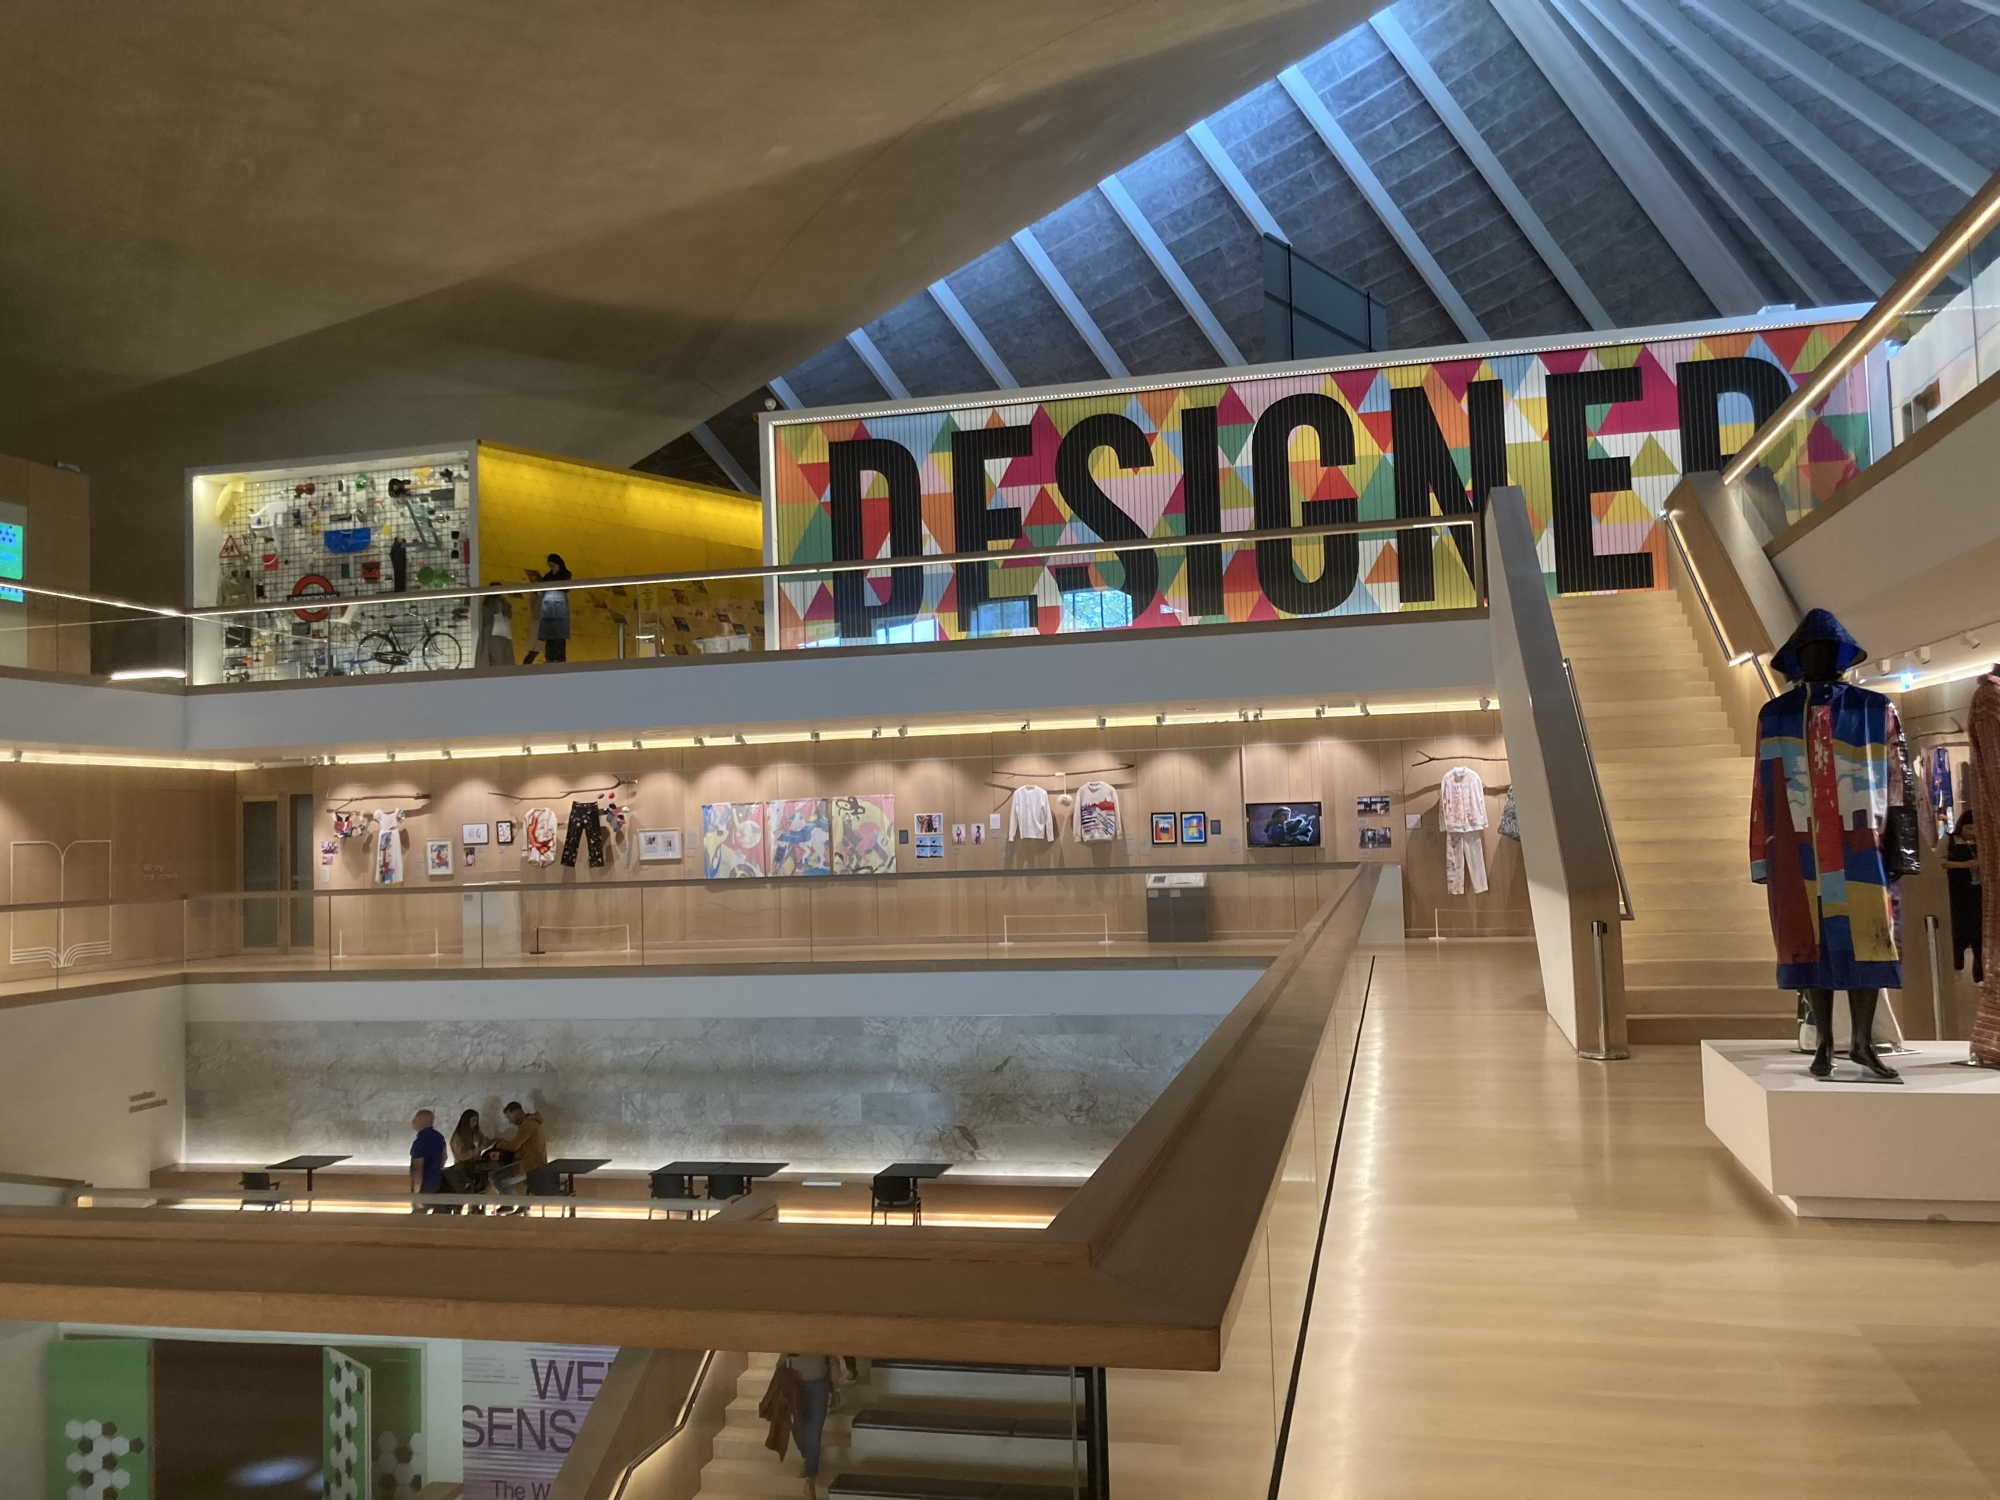 Blick durch den offenen Foyerraum des Design Museums, rechts oben eine Textwand mit dem Schriftzug „Designer“, von dort führt eine Treppe ein Stockwerk tiefer, wo Kleidung aus der Modeausstellung zu sehen ist